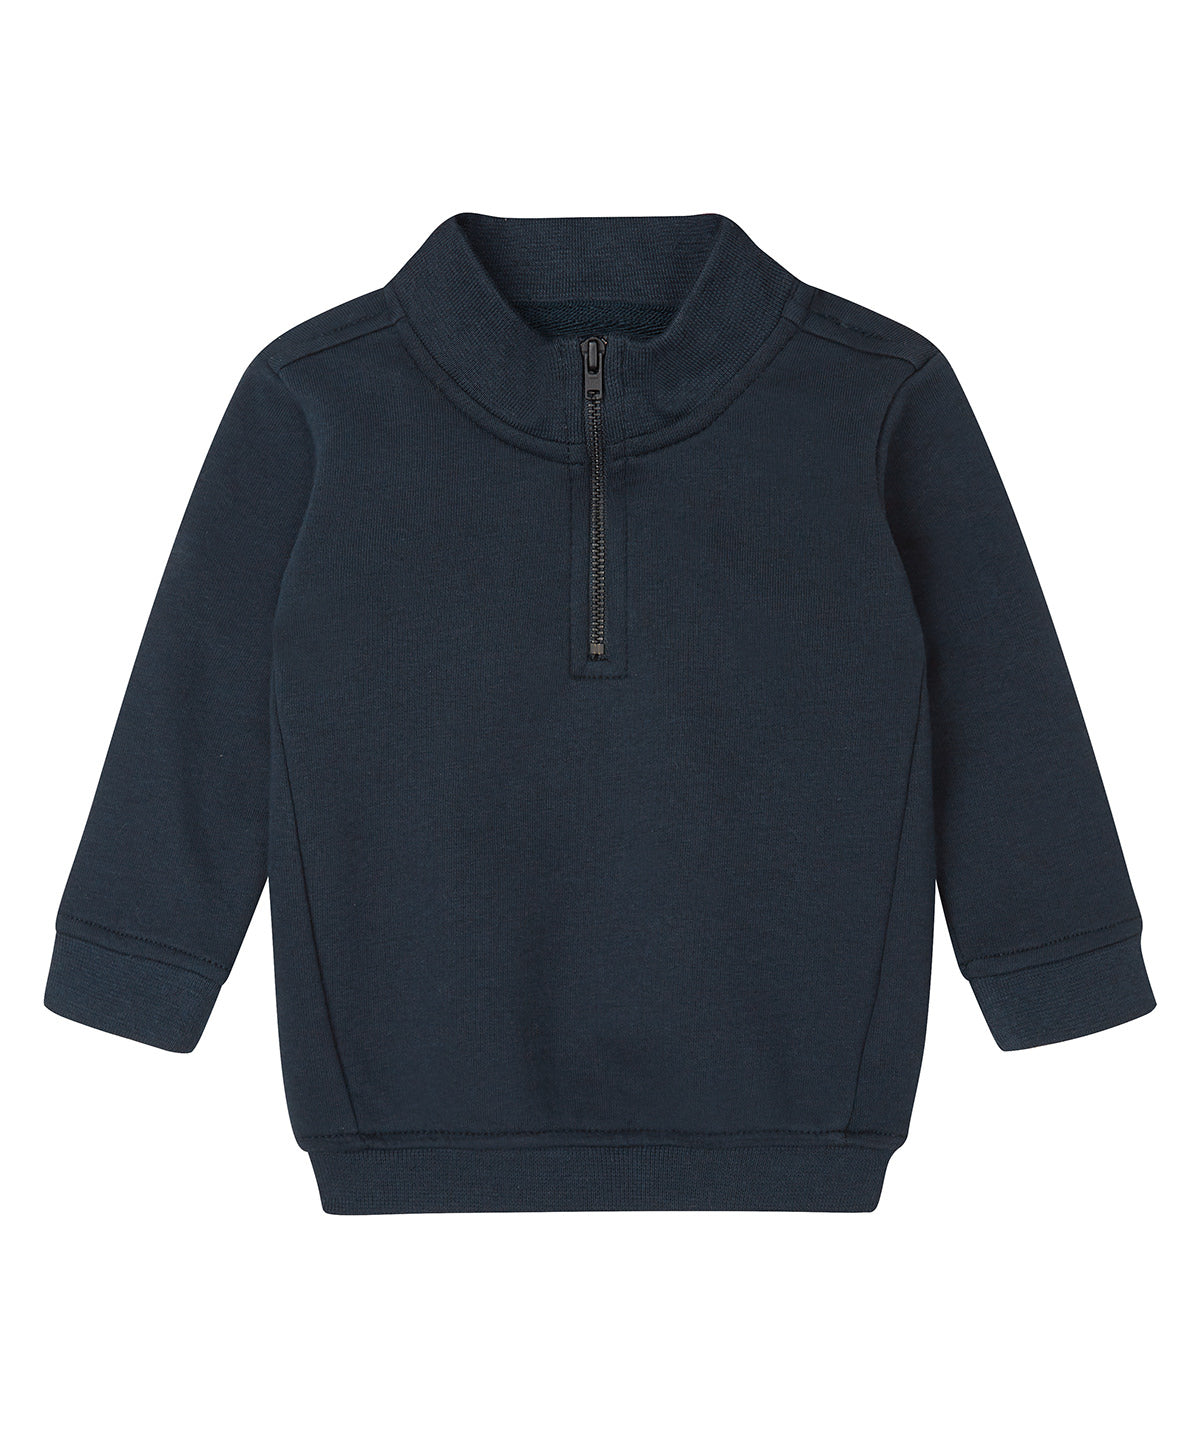 Háskólapeysur - Baby ¼-zip Sweatshirt